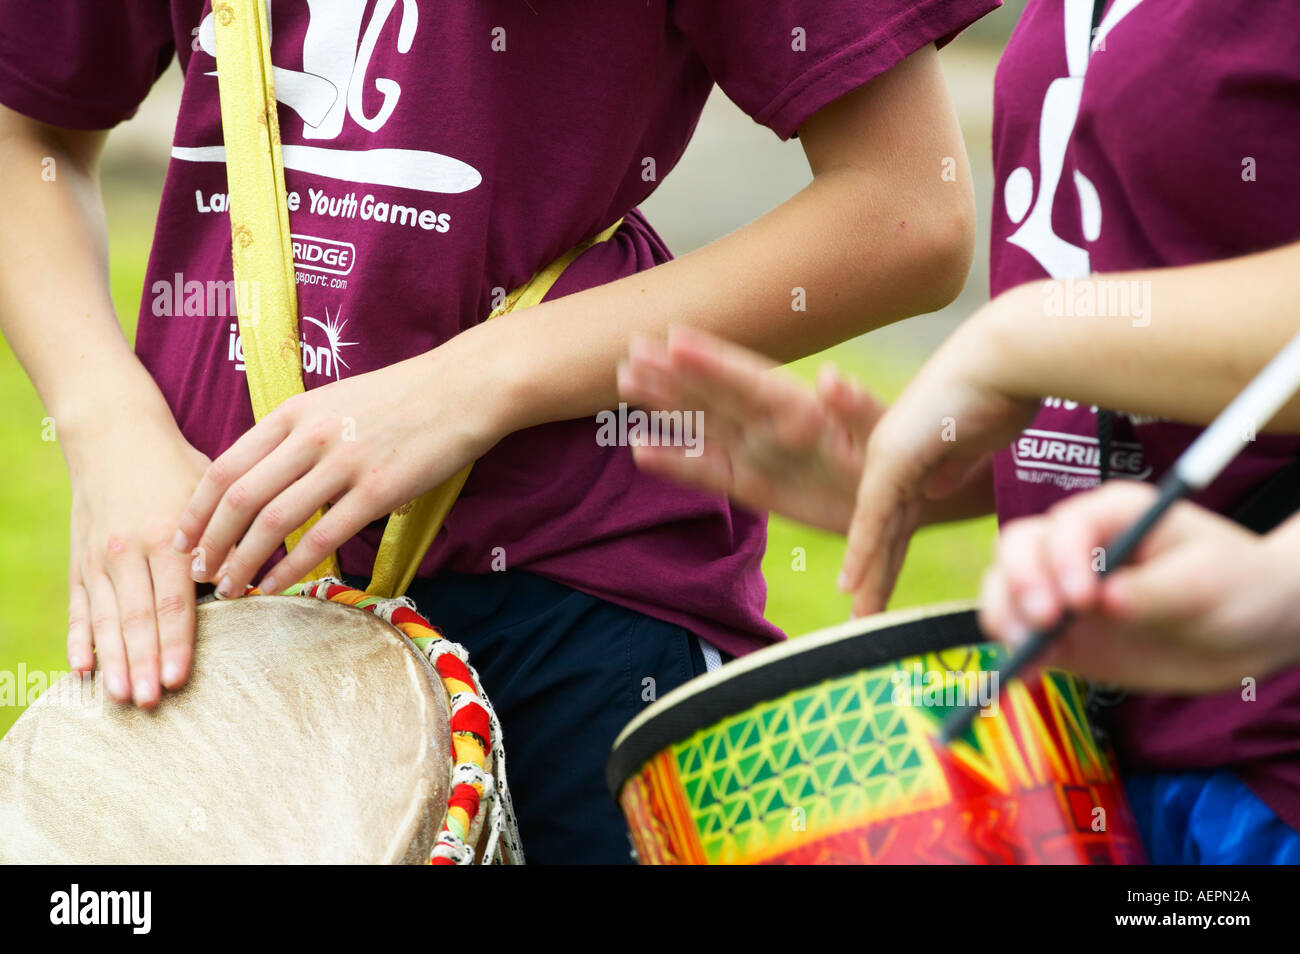 Jeune fille jouant un tambour à un événement sportif Banque D'Images